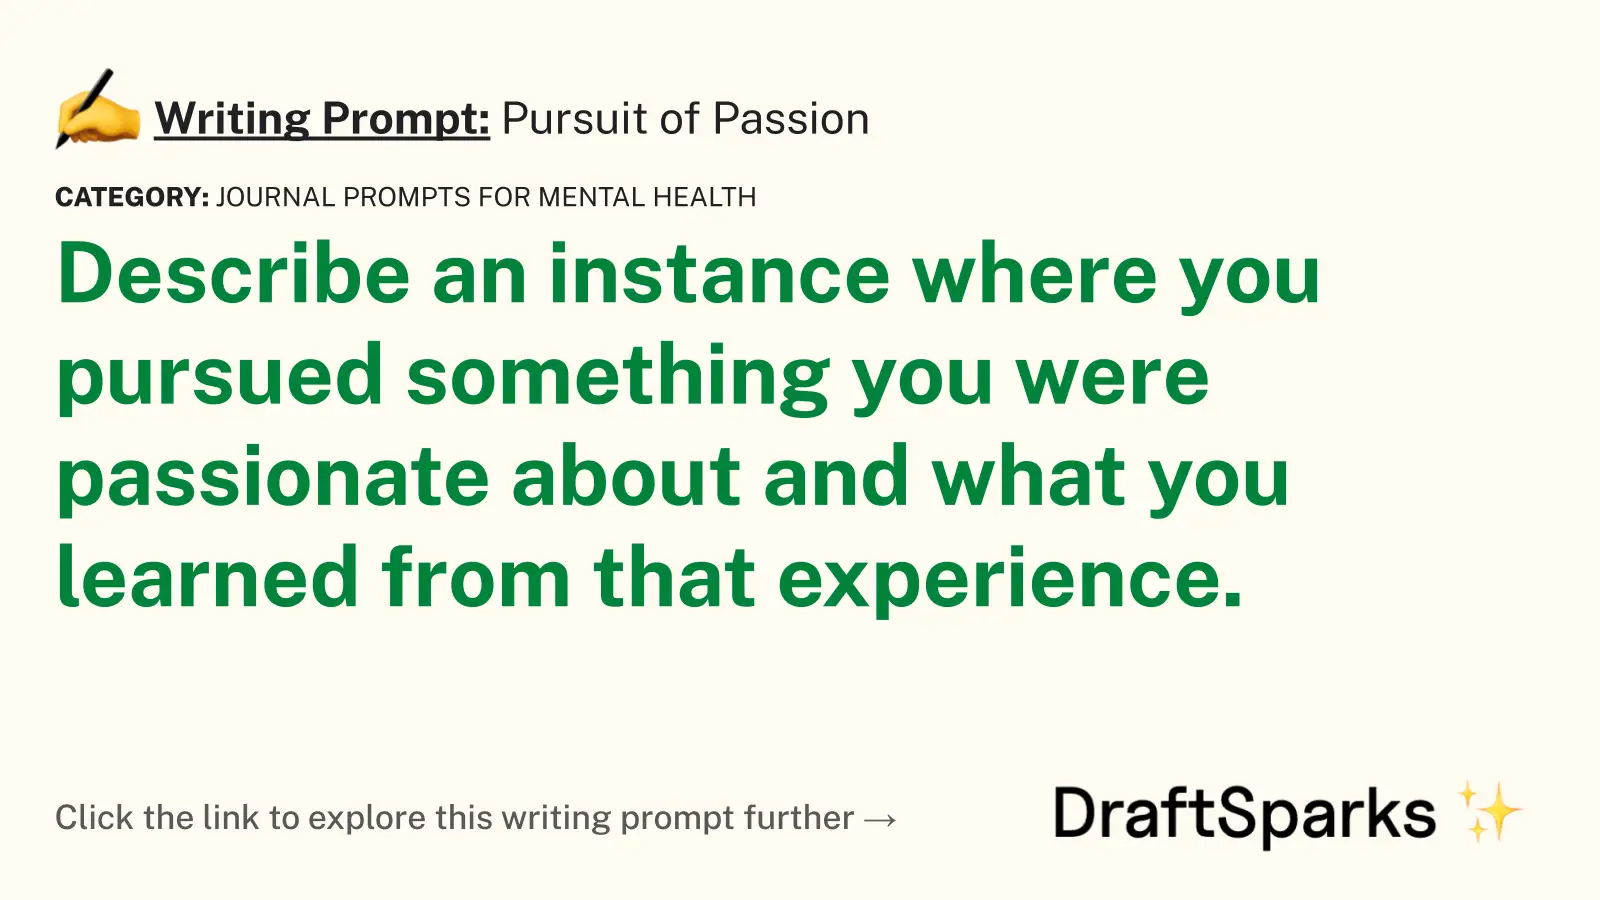 Pursuit of Passion